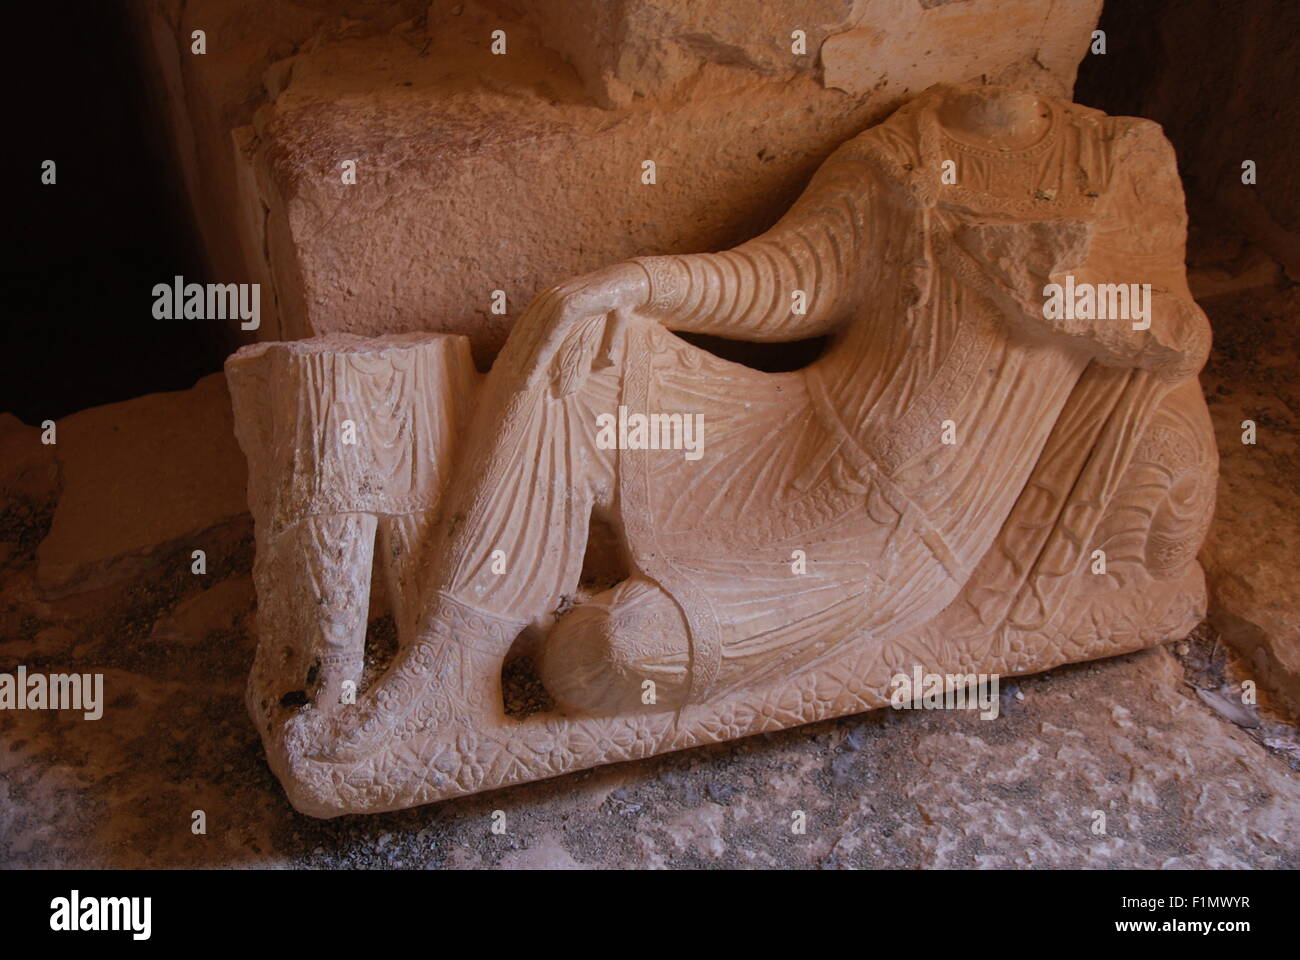 Palmyra, Siria. Xx Giugno, 2009. L'interno di una antica torre di grave nel deserto città di Palmyra, Siria, 20 giugno 2009. La milizia terroristica Stato islamico (SI) ha distrutto più di siti archeologici unici in Palmyra. Gli estremisti hanno fatto esplodere diversi dei circa 2000-anno-vecchia tomba torri. Foto: CHRIS MELZER/DPA - nessun filo SERVICE - © dpa/Alamy Live News Foto Stock